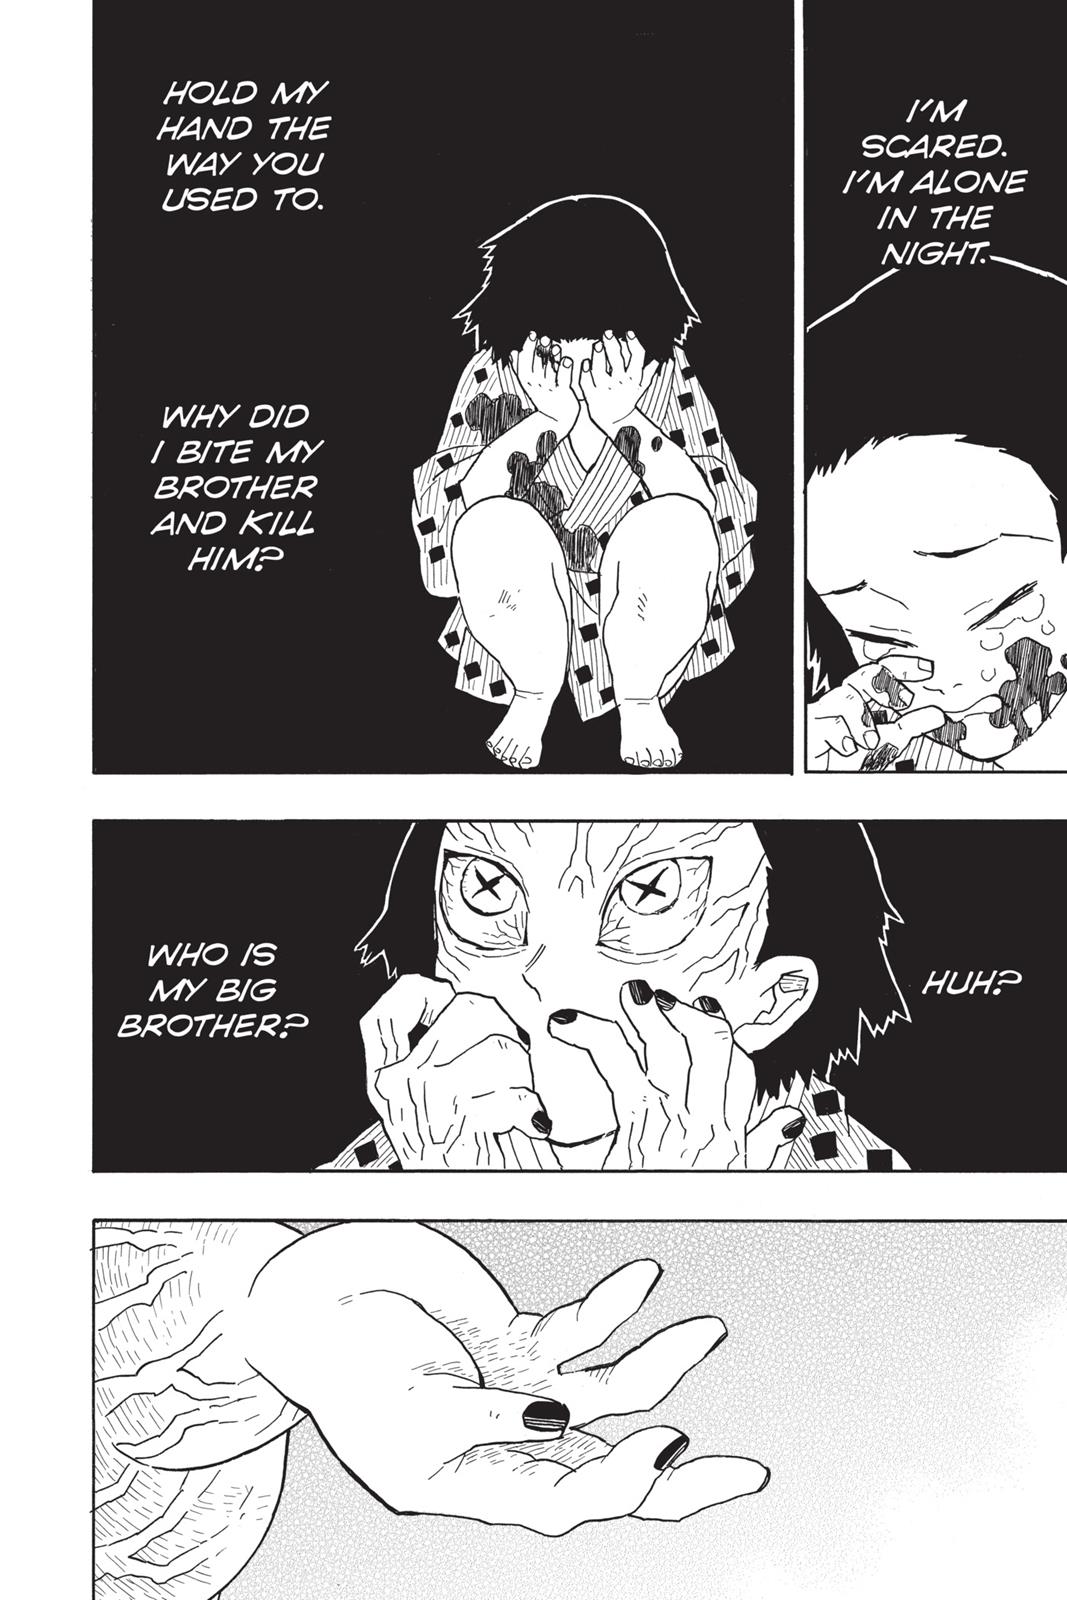 Demon Slayer Manga Manga Chapter - 8 - image 8